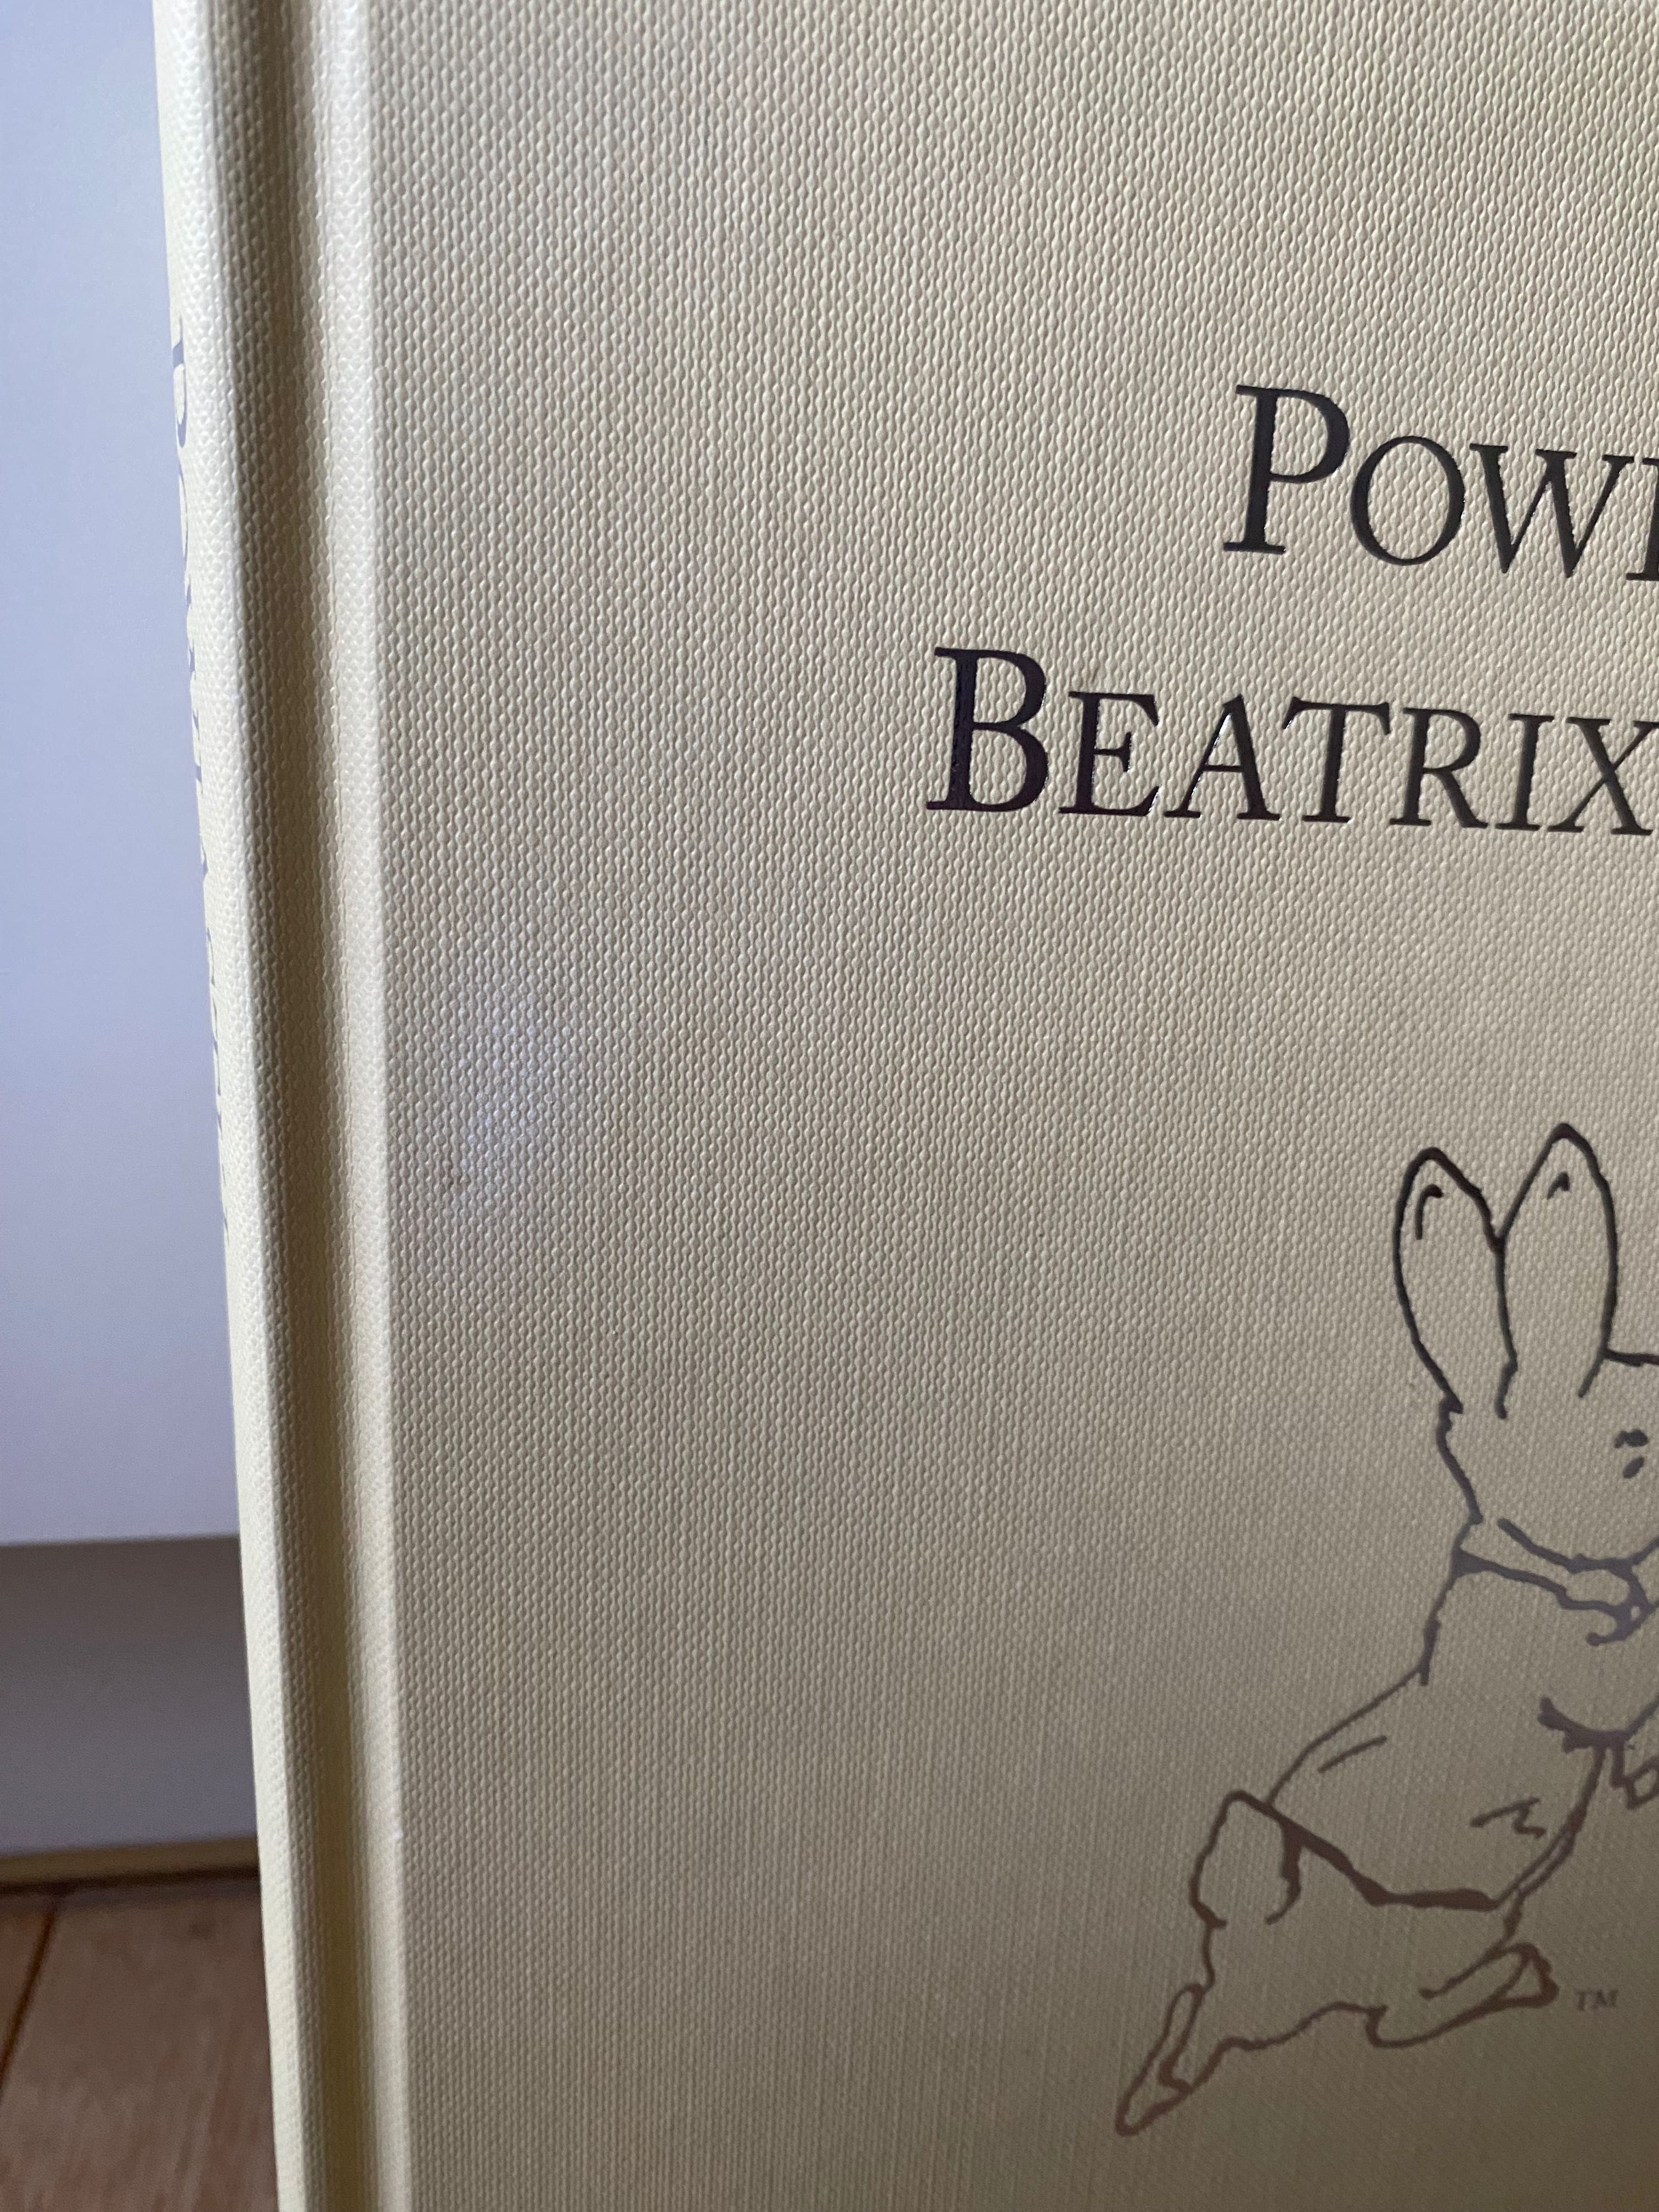 Beatrix Potter Powiastki